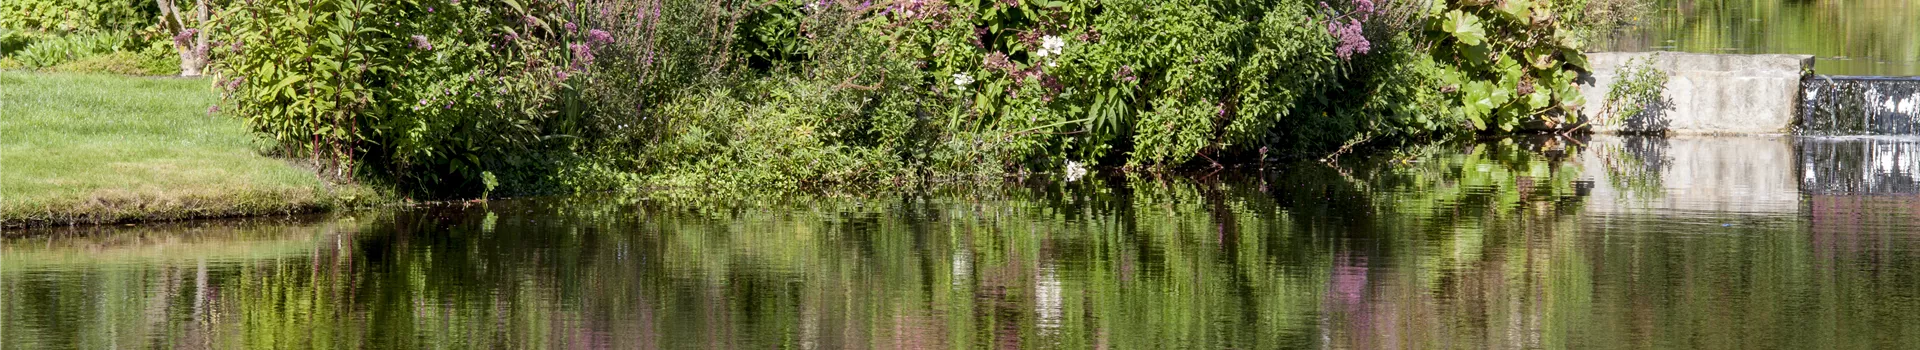 Natürliche Algenbekämpfung im Teich